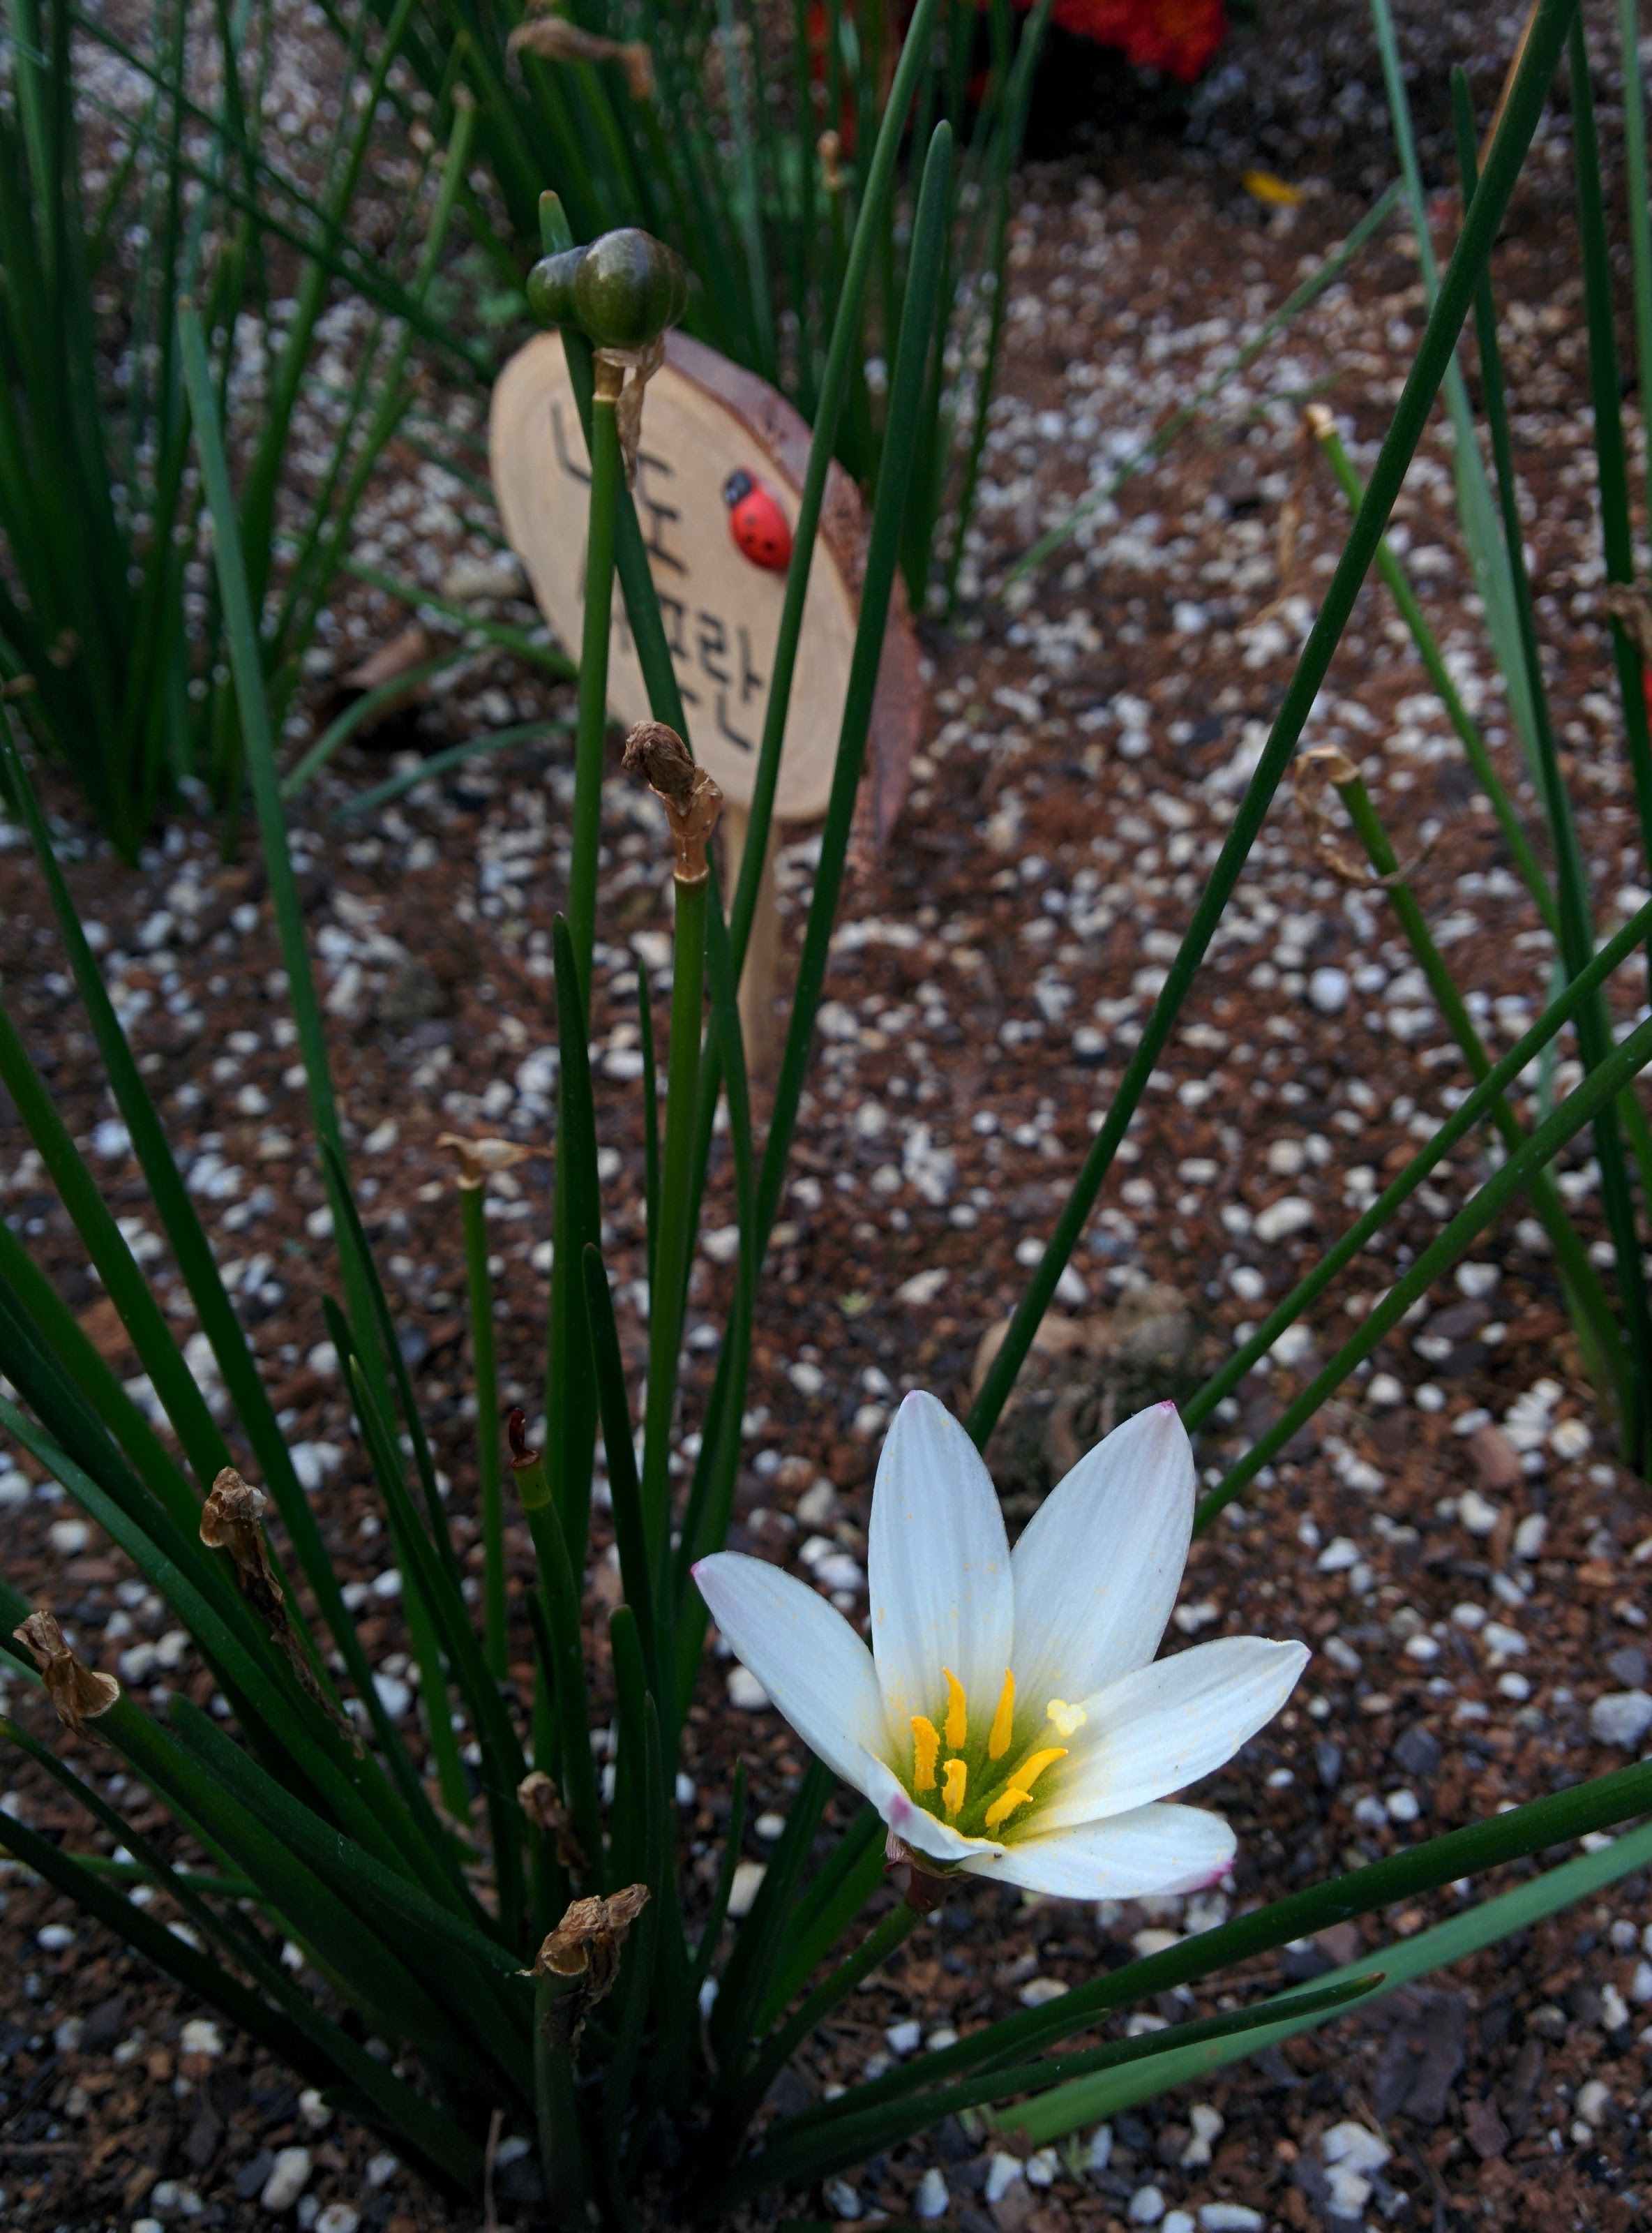 IMG_20151008_171656.jpg 과기원 울타리 작은 화단의 나도샤프란 열매와 흰색 꽃